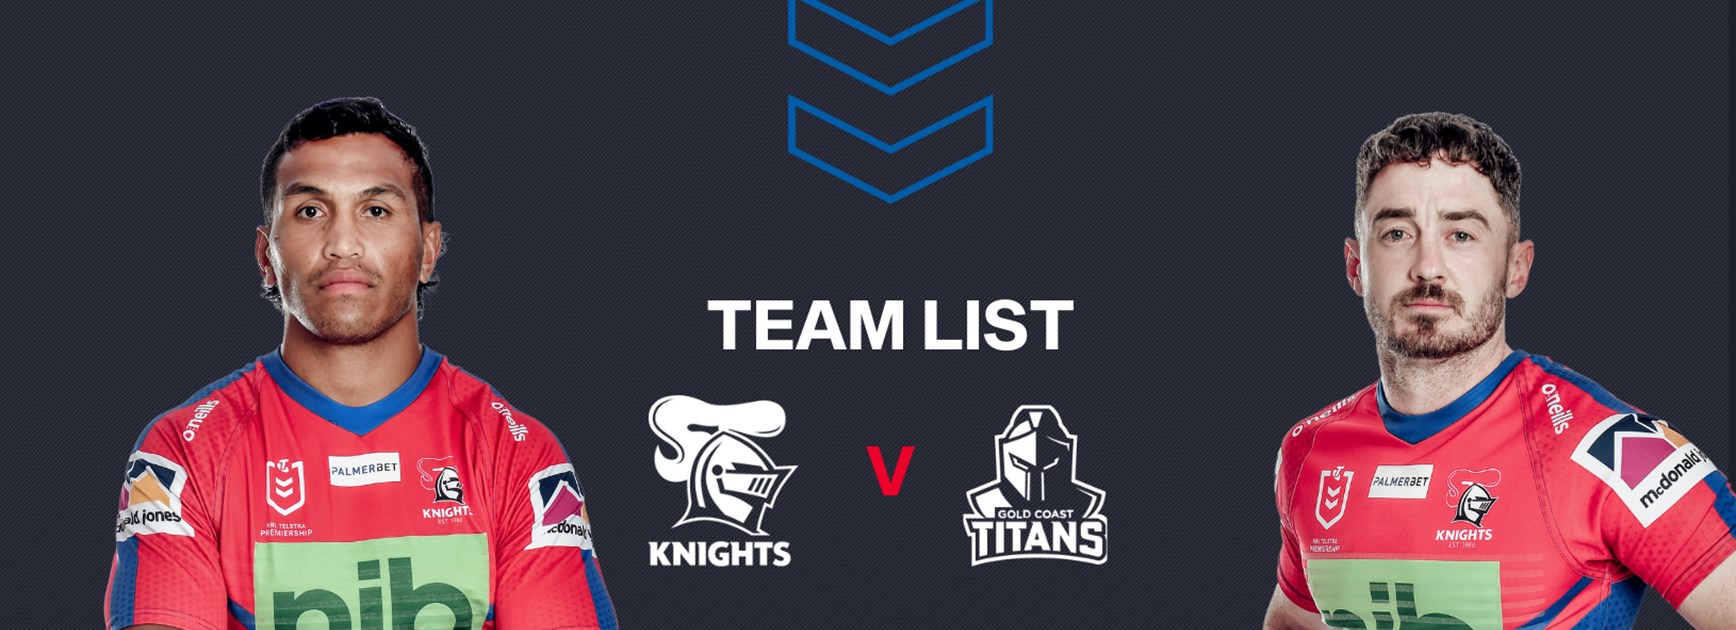 Titans v Knights Round 24 NRL team list